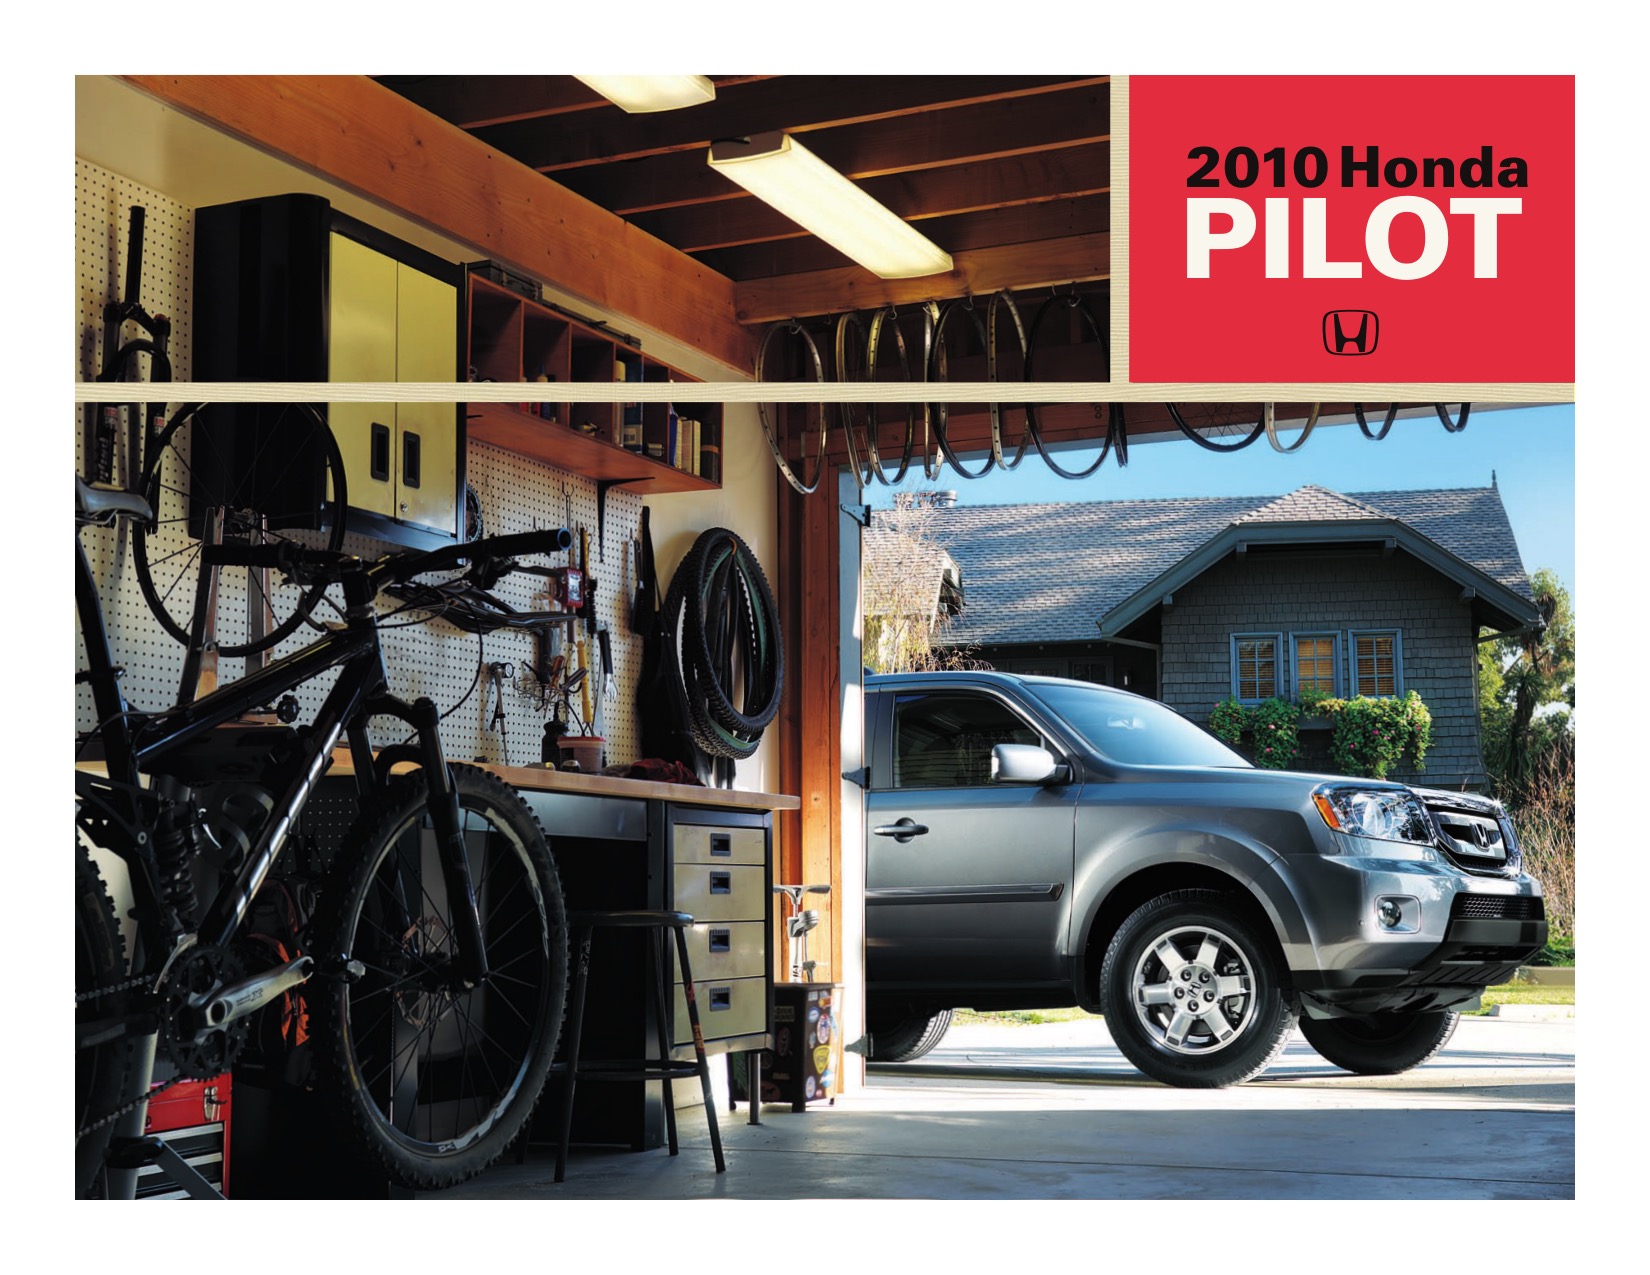 2010 Honda Pilot Brochure